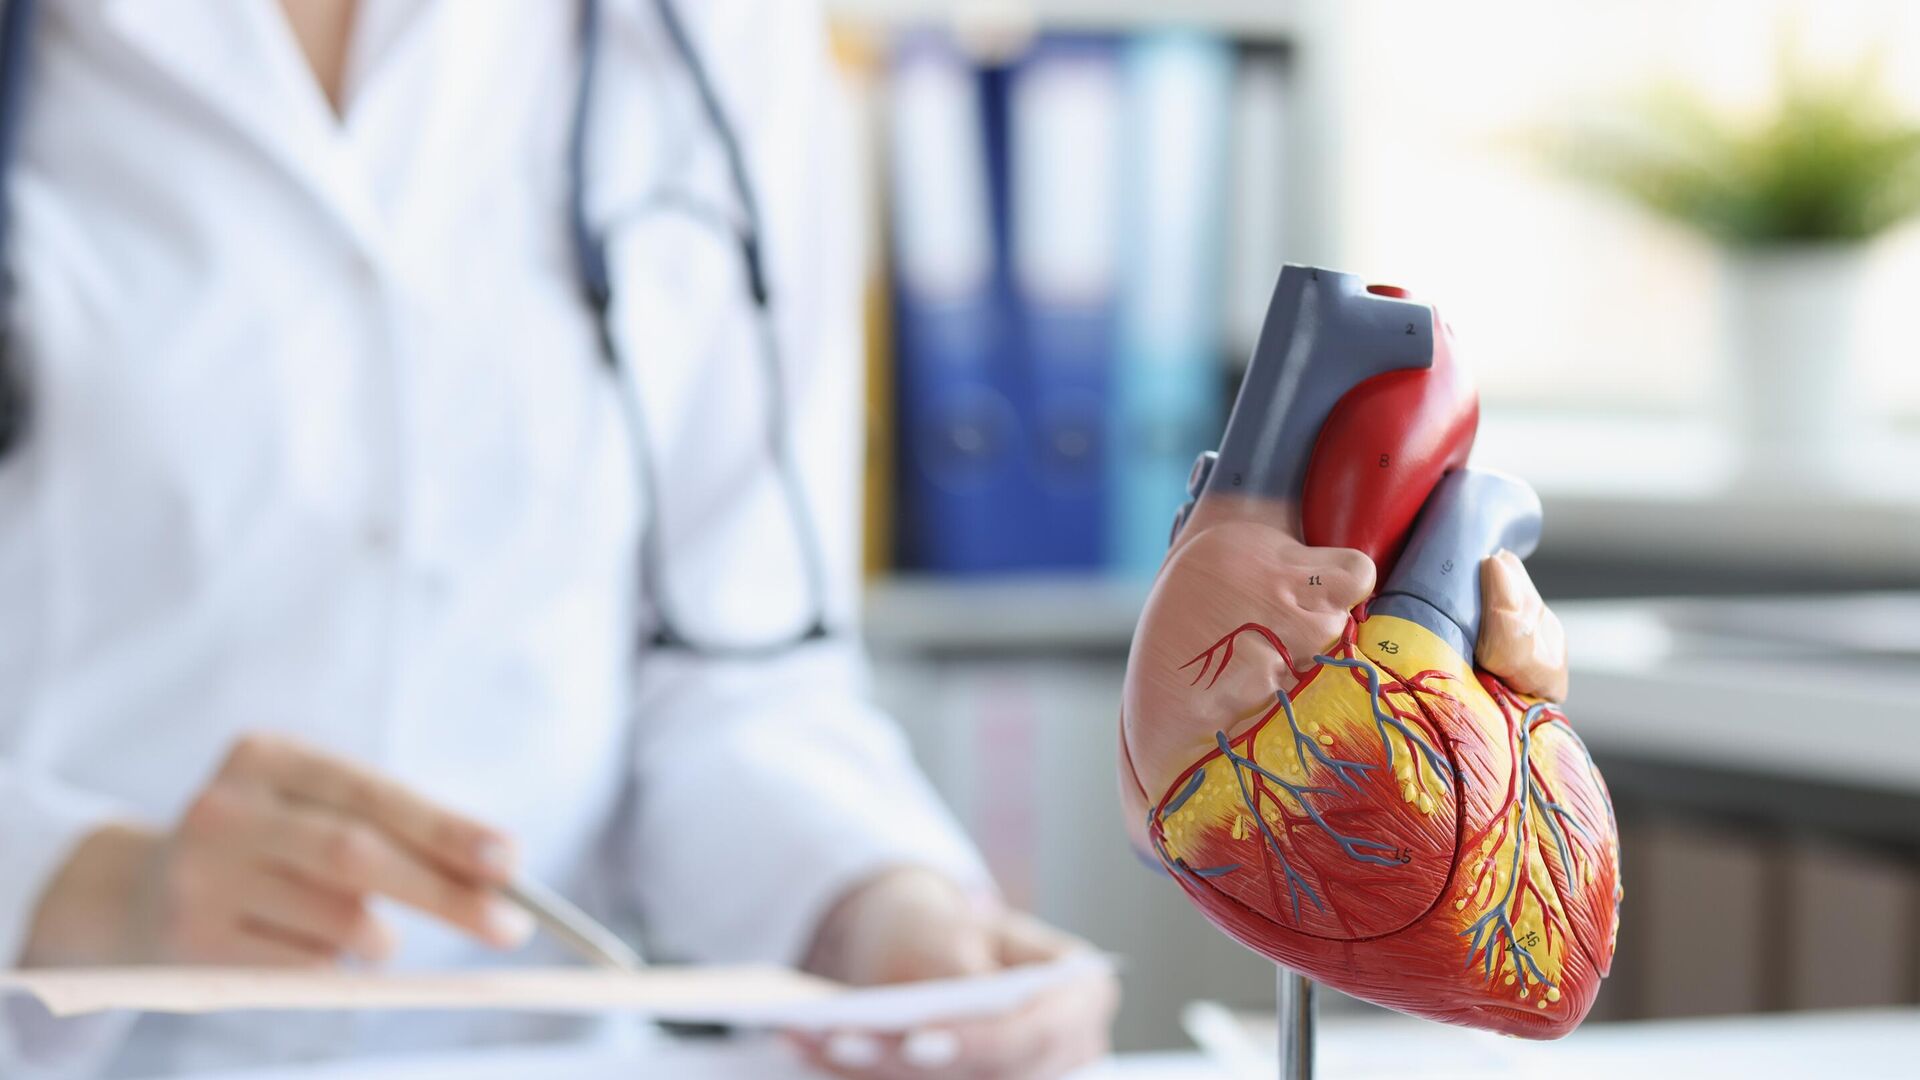 Правильная частота проверок сердца - как сохранить здоровье "мотора" организма